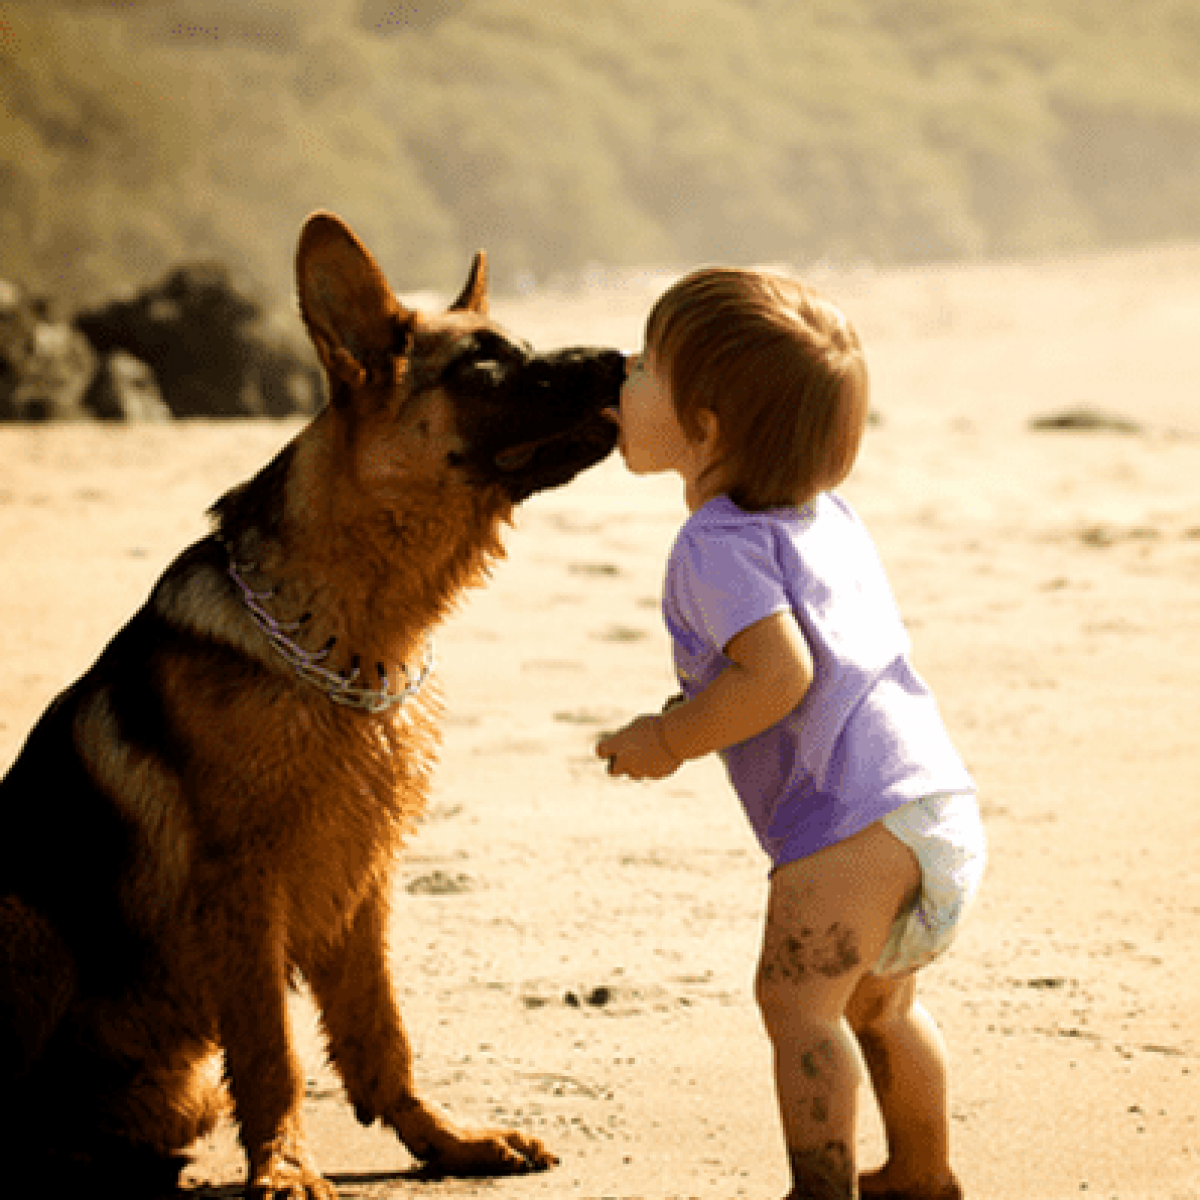 Какой самый 1 друг человека. Собака друг человека. Собака лучший друг человека. Цитаты о животных для детей. Собака - лучший друг.